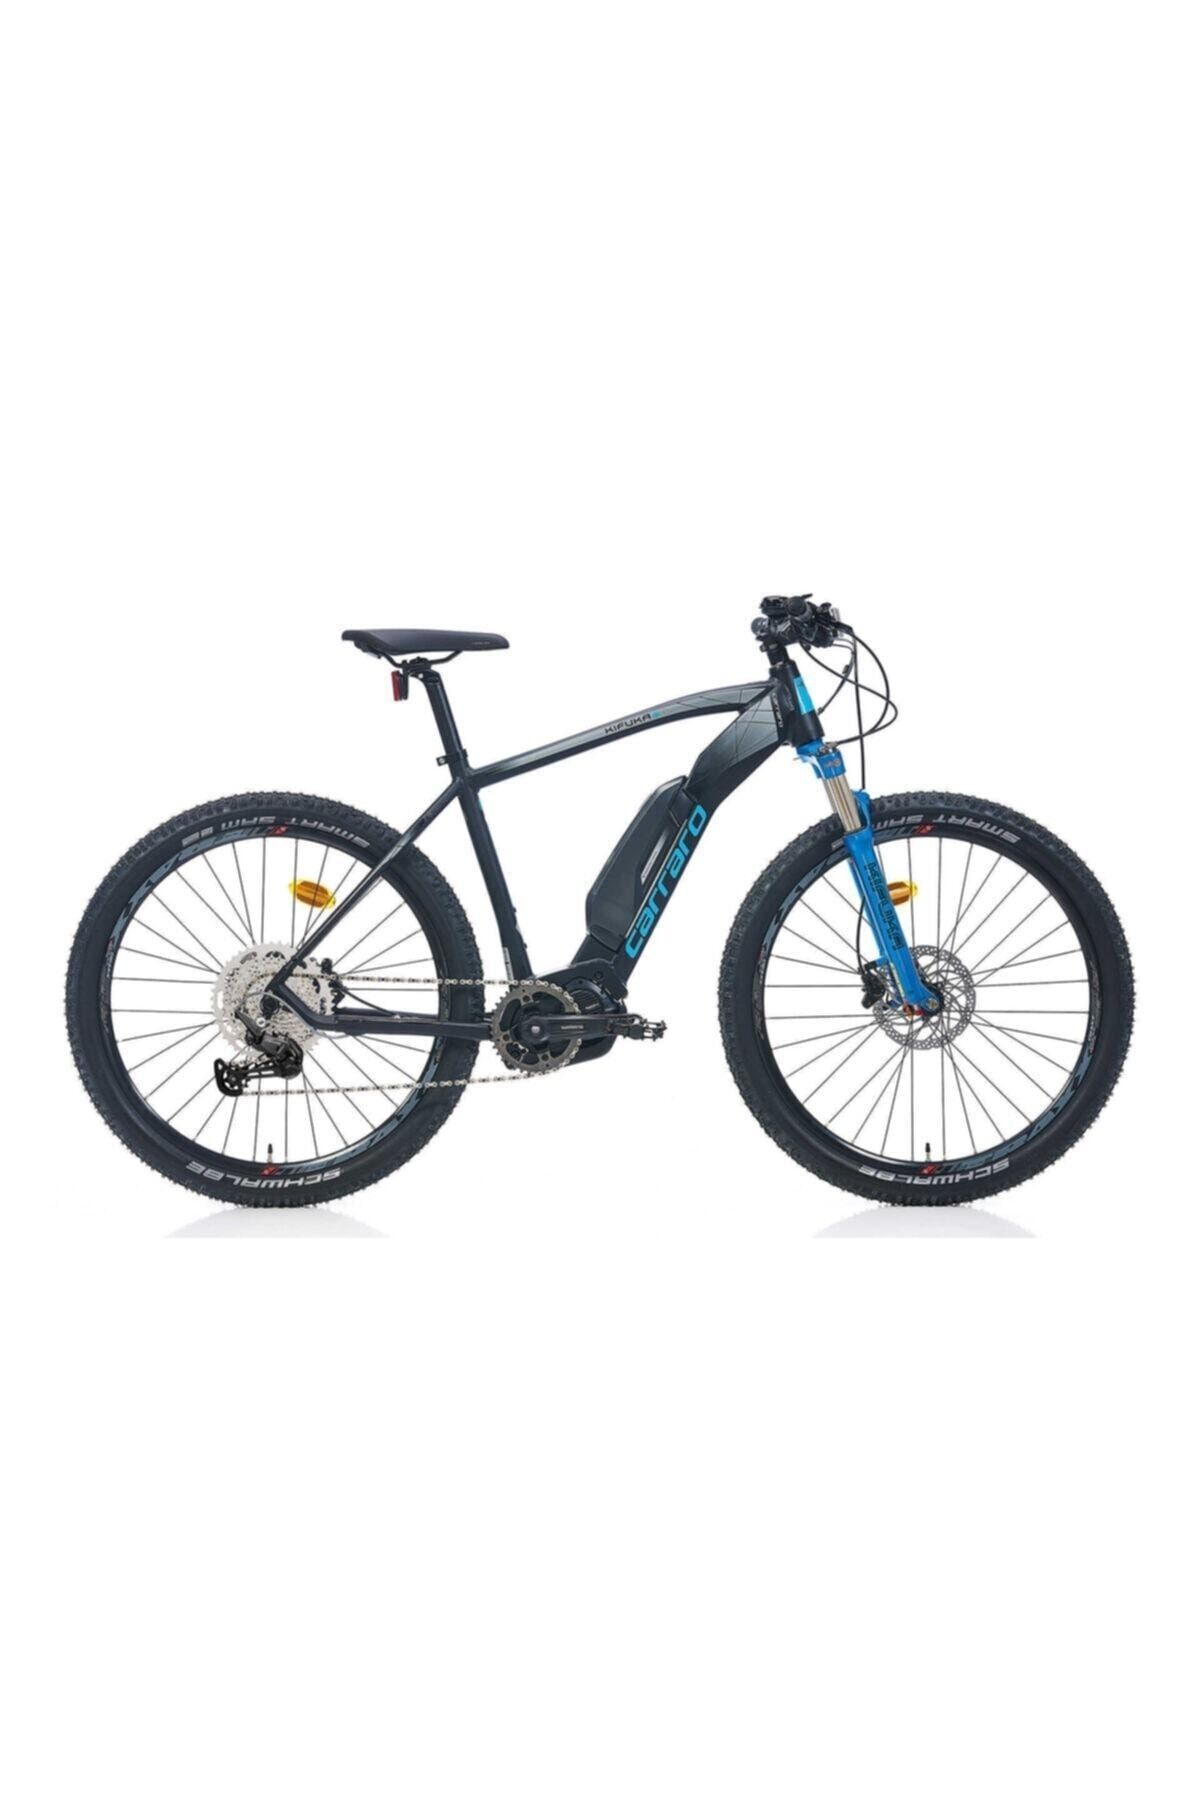 Carraro 2021 Kıfuka Hd 29 Inc Elektrikli Bisiklet - Dağ Siyah-mavi-gri 52 Cm